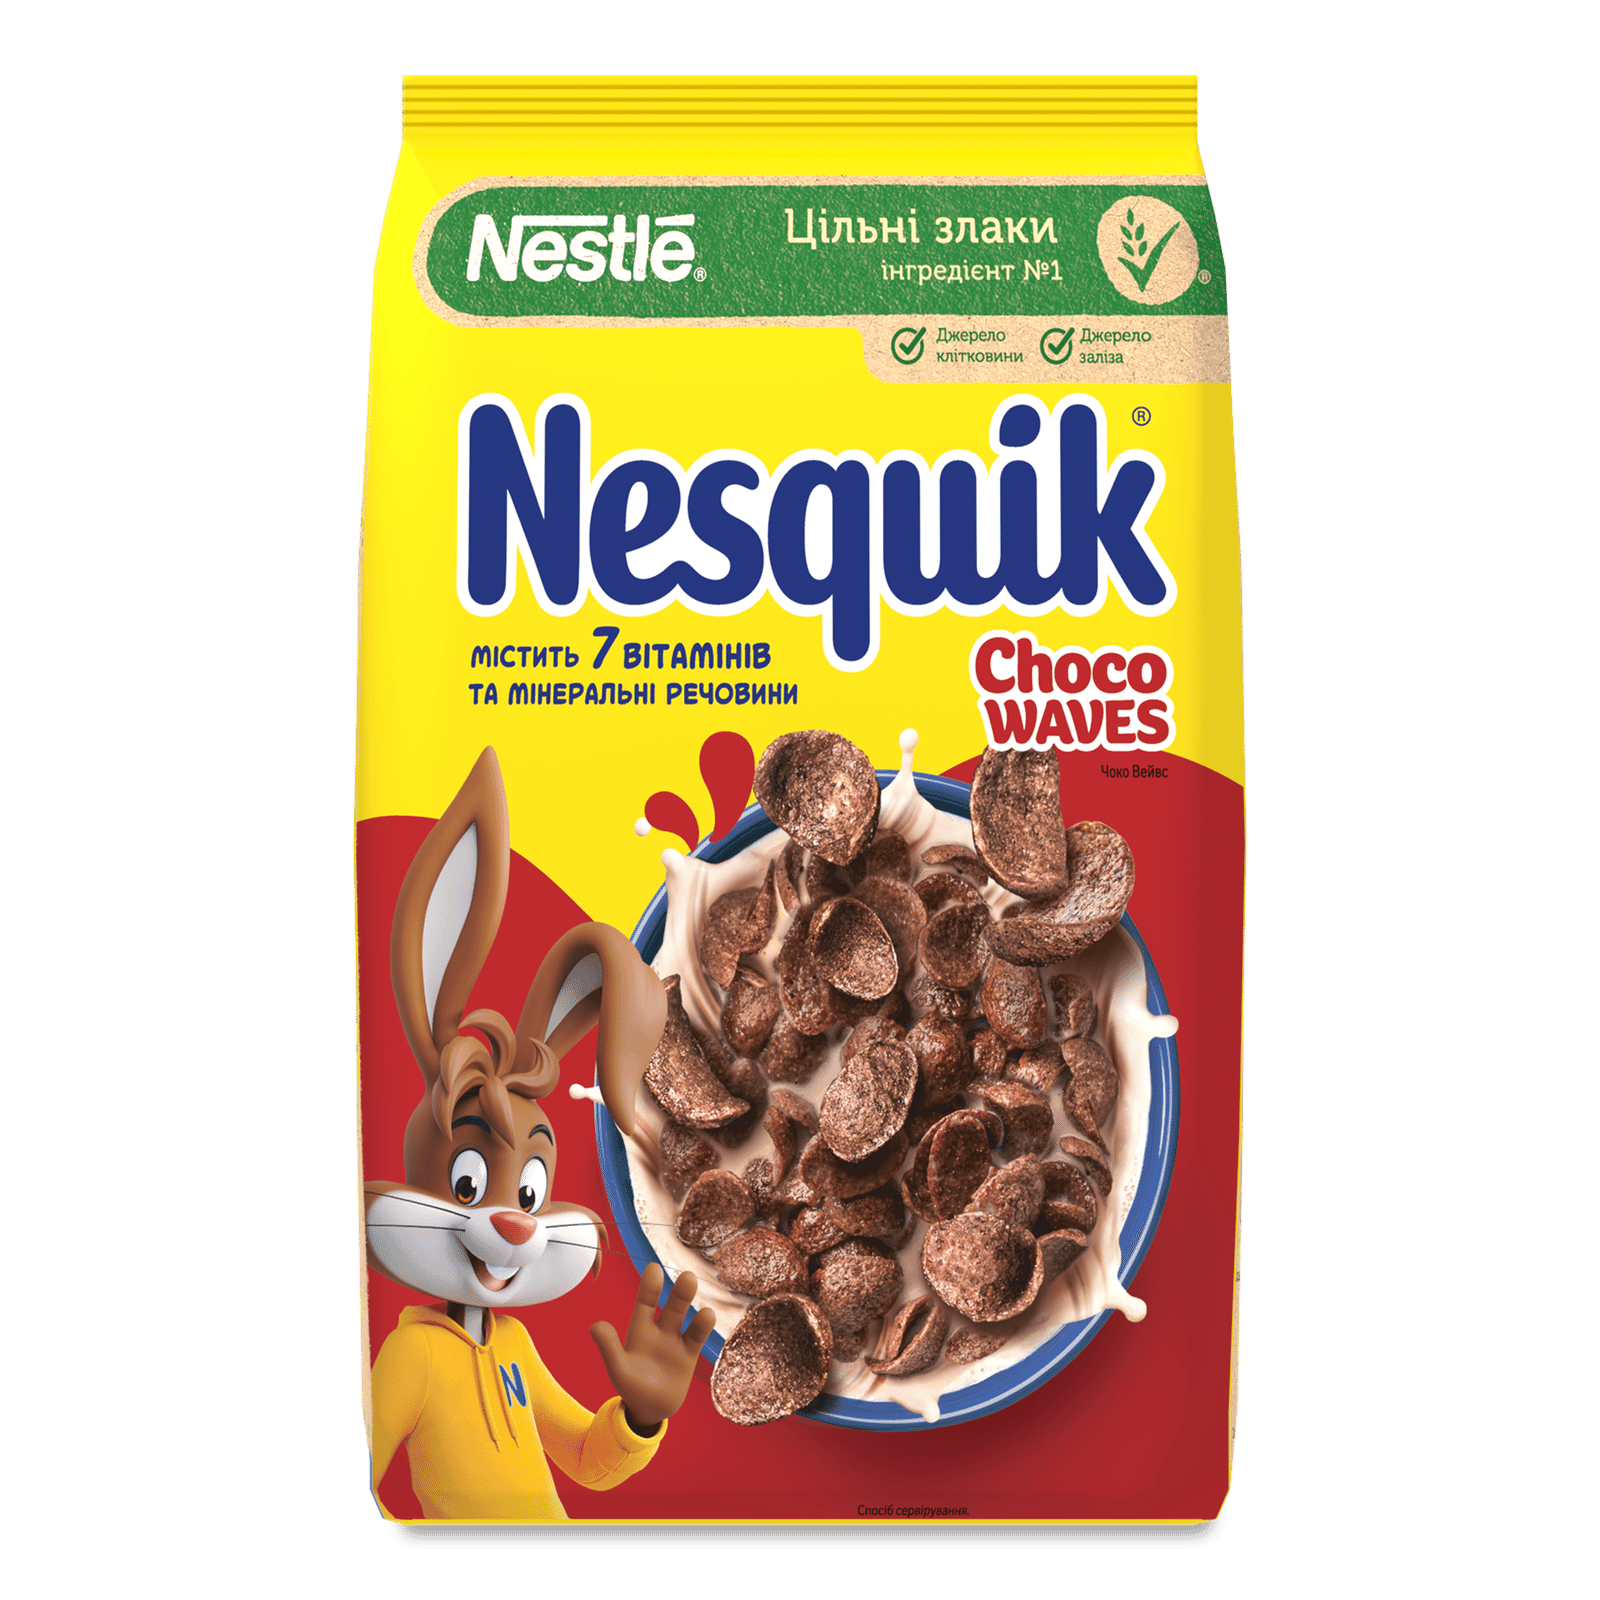 Сніданок сухий Nesquik Choco waves з вітамінно-мінеральними речовинами - 1